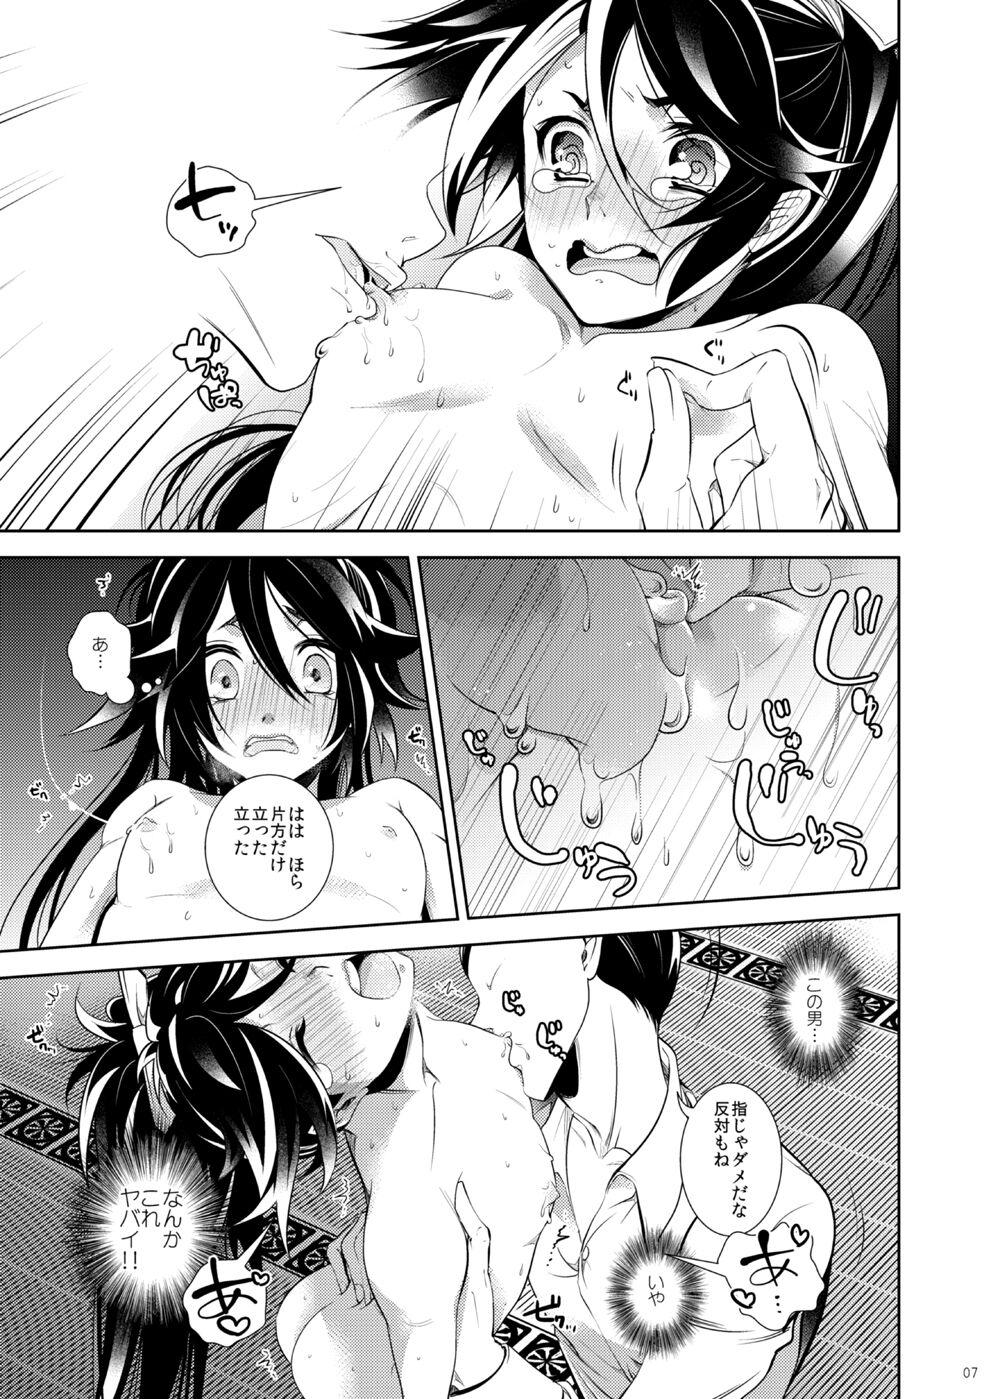 Mamada Hi no Naka Sake to Yume no Naka - Touken ranbu Porno - Page 8